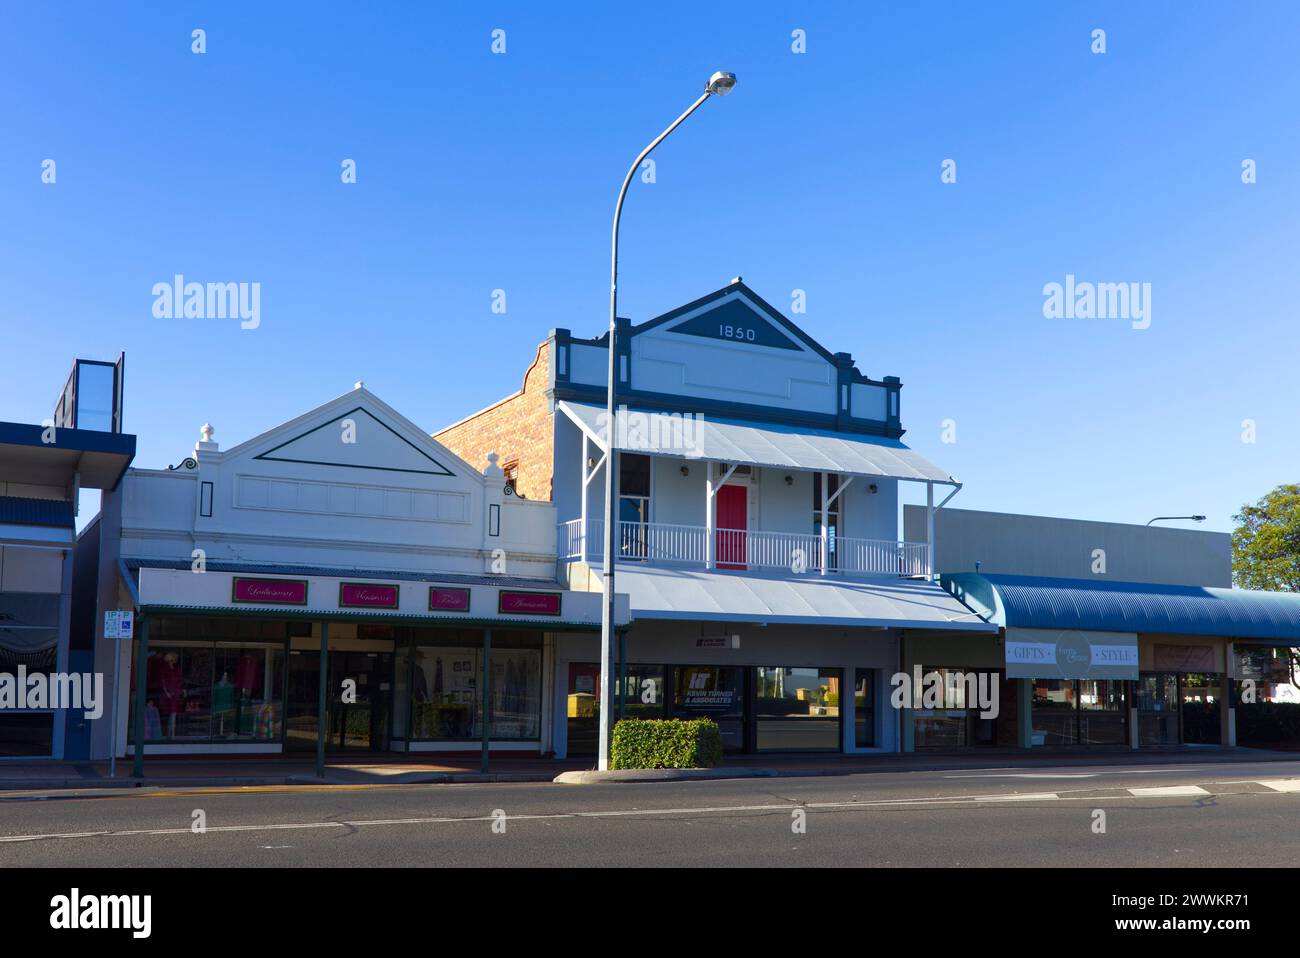 Paesaggio storico con edifici del 1850 ancora in uso oggi su Cunningham Street Dalby Queensland Australia Foto Stock